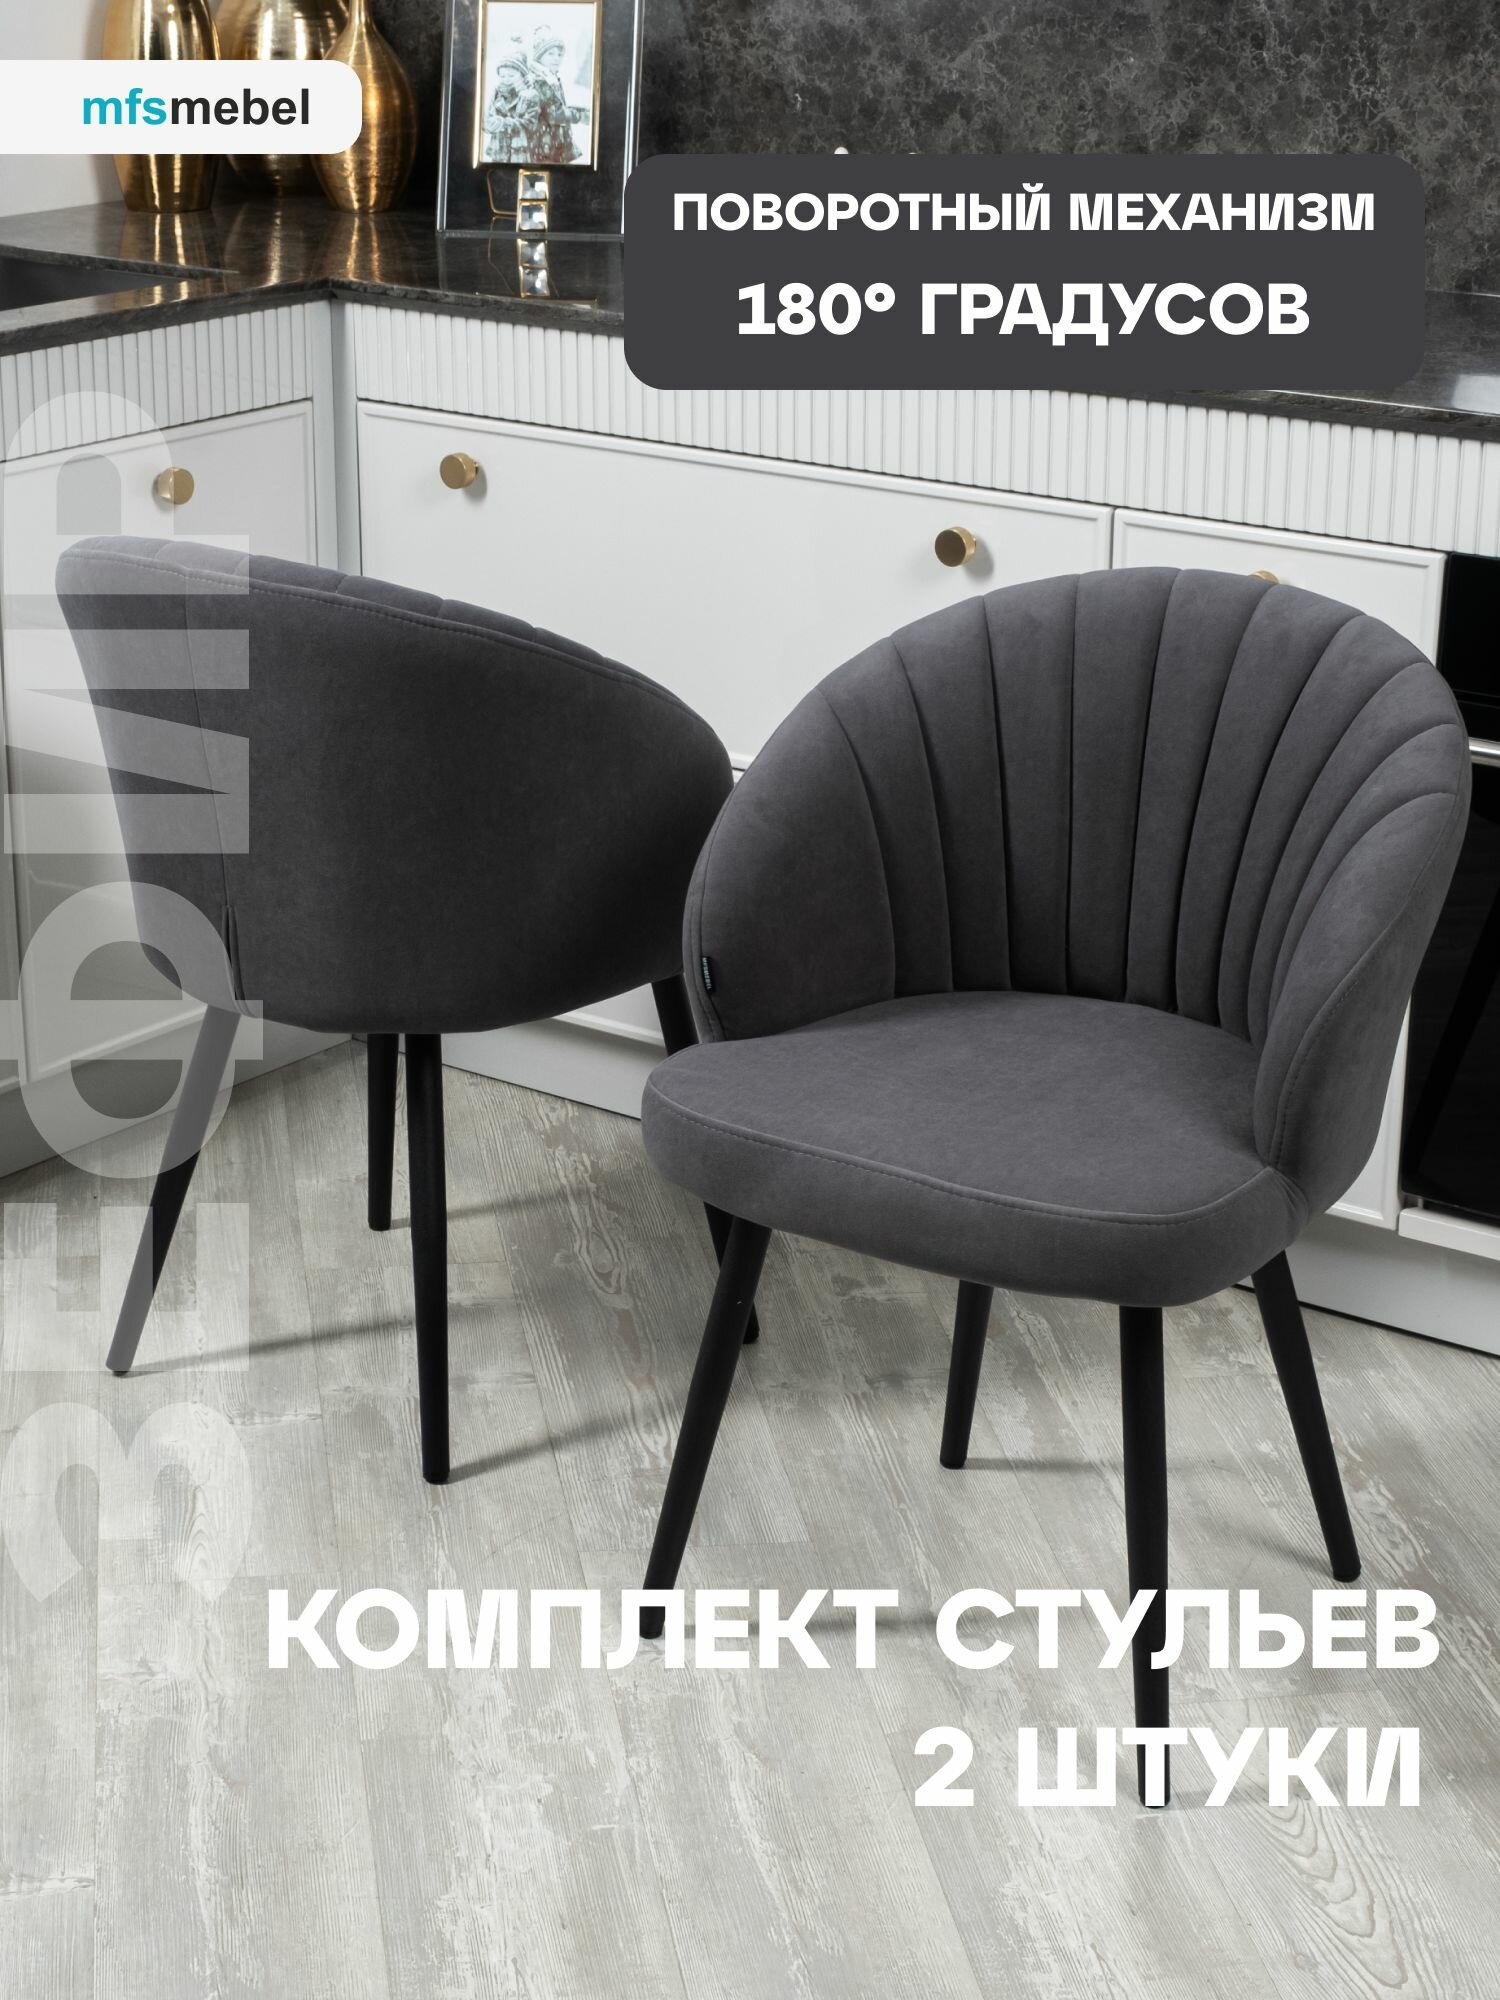 Комплект стульев с поворотным механизмом 360 градусов Зефир графит, стулья кухонные 2 штуки